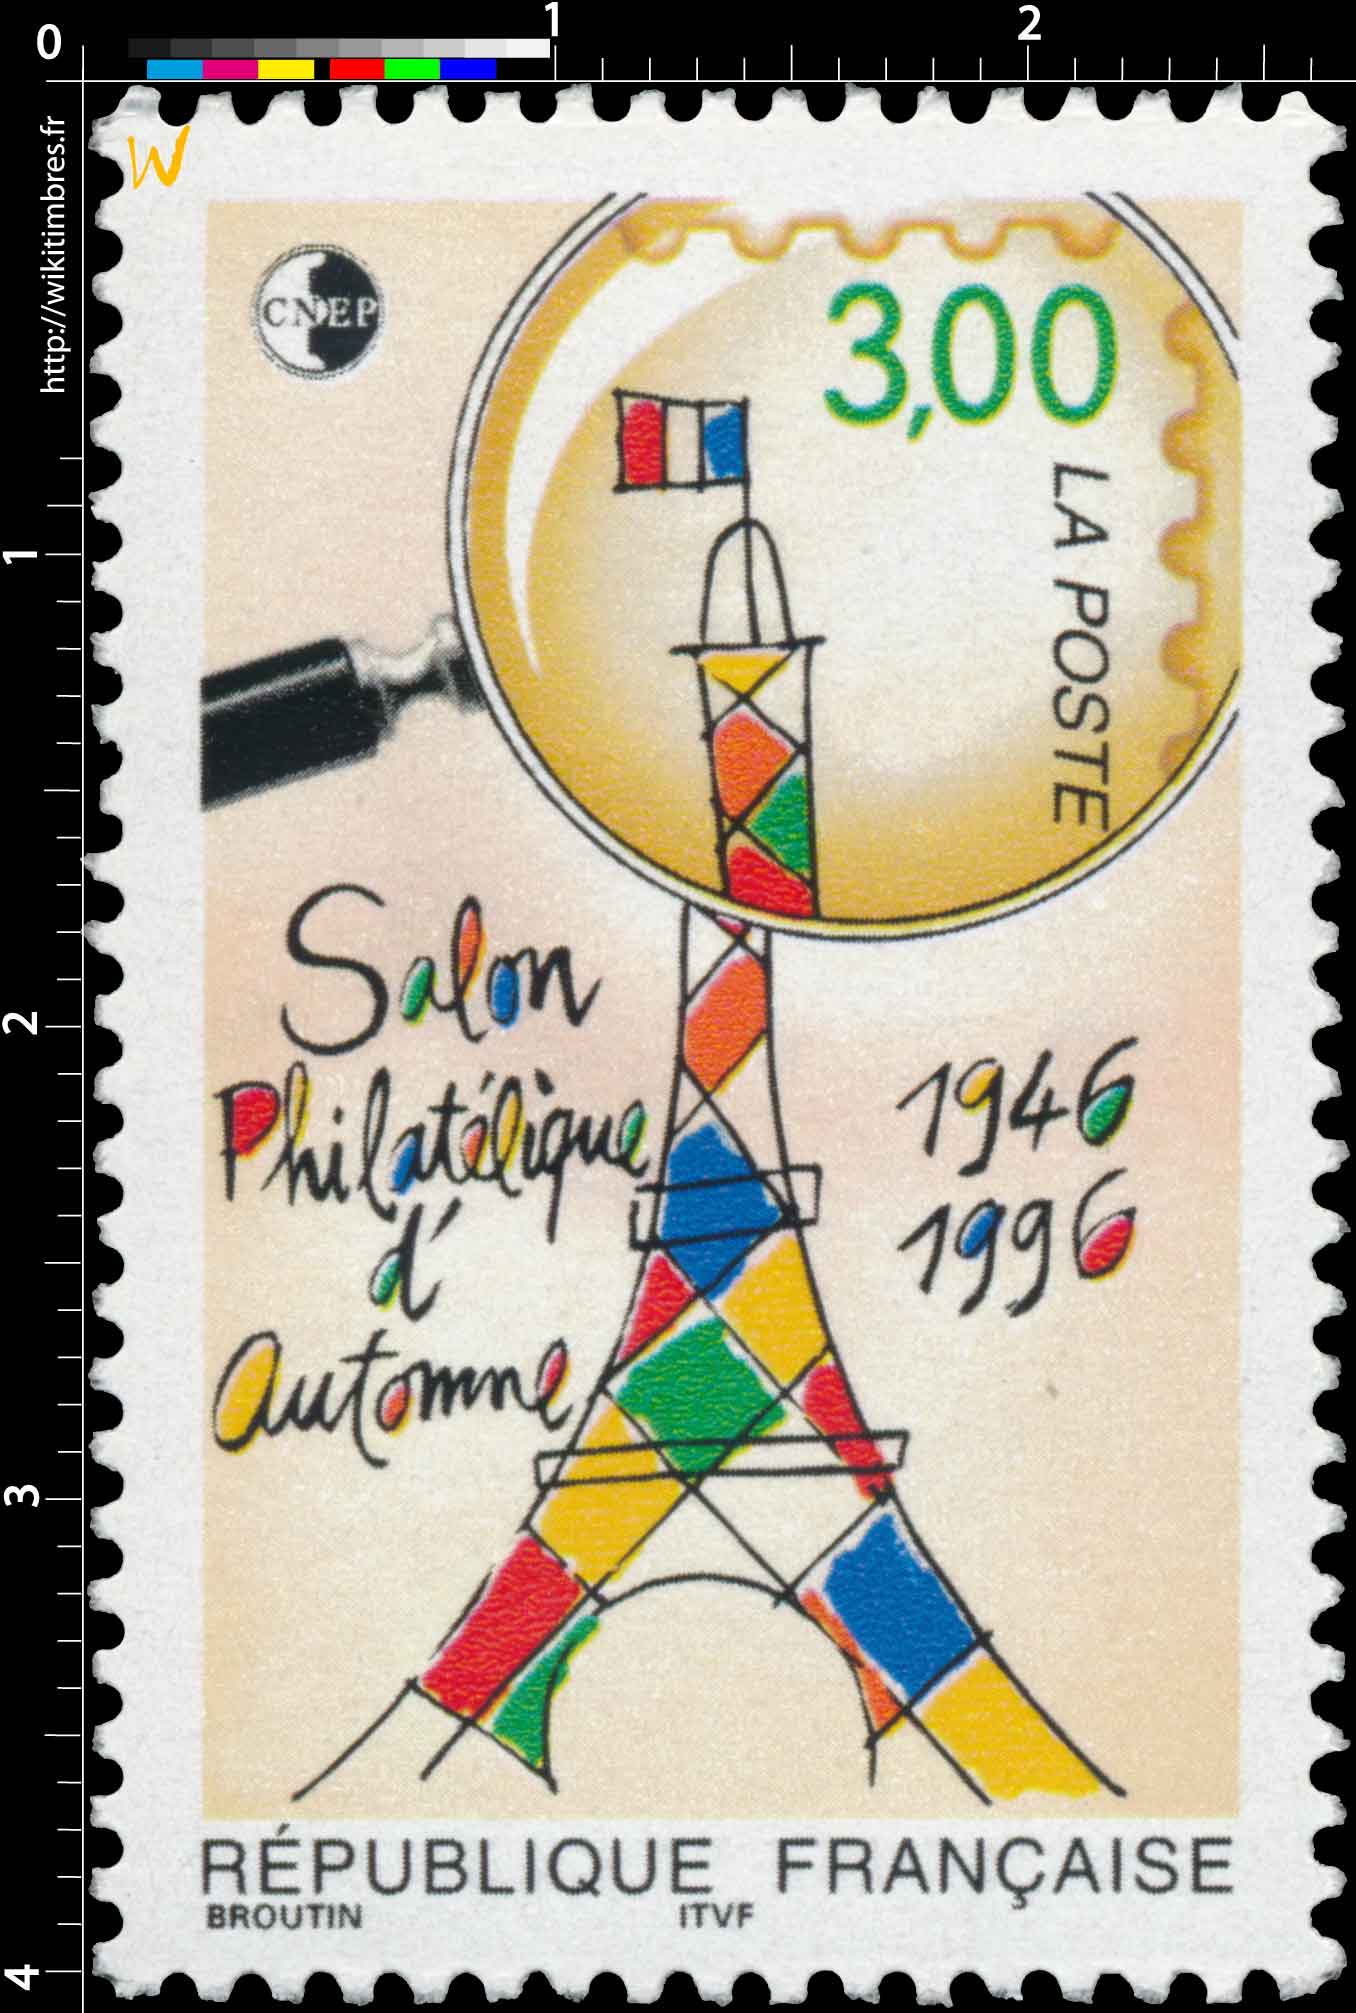 Salon Philatélique d'Automne 1946-1996 CNEP